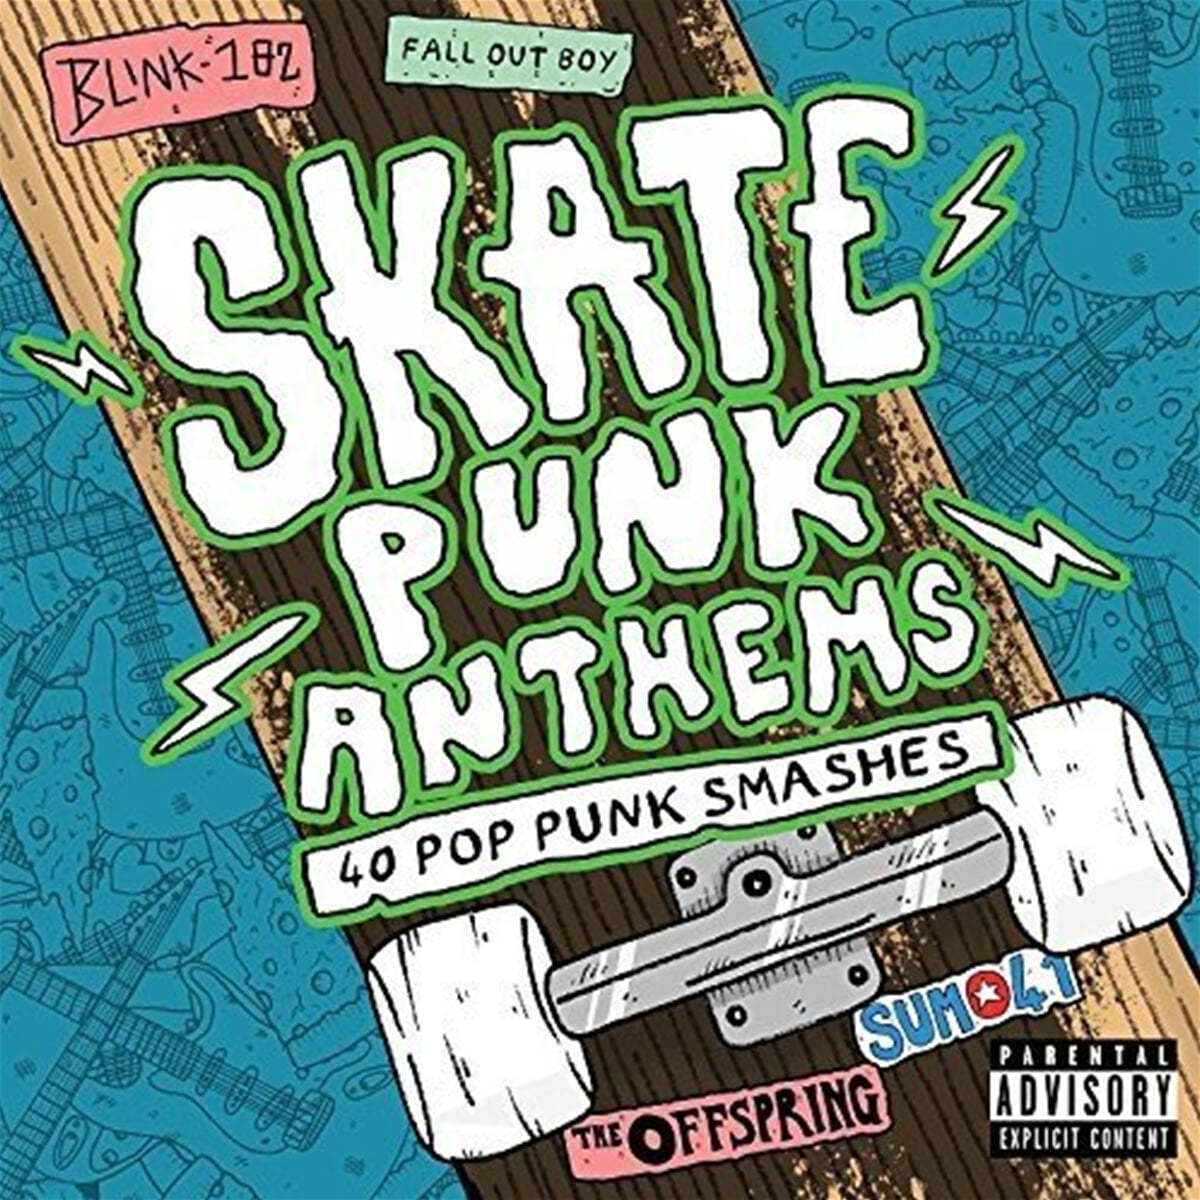 펑크 음악 컴필레이션 (Skate Punk Anthems) 